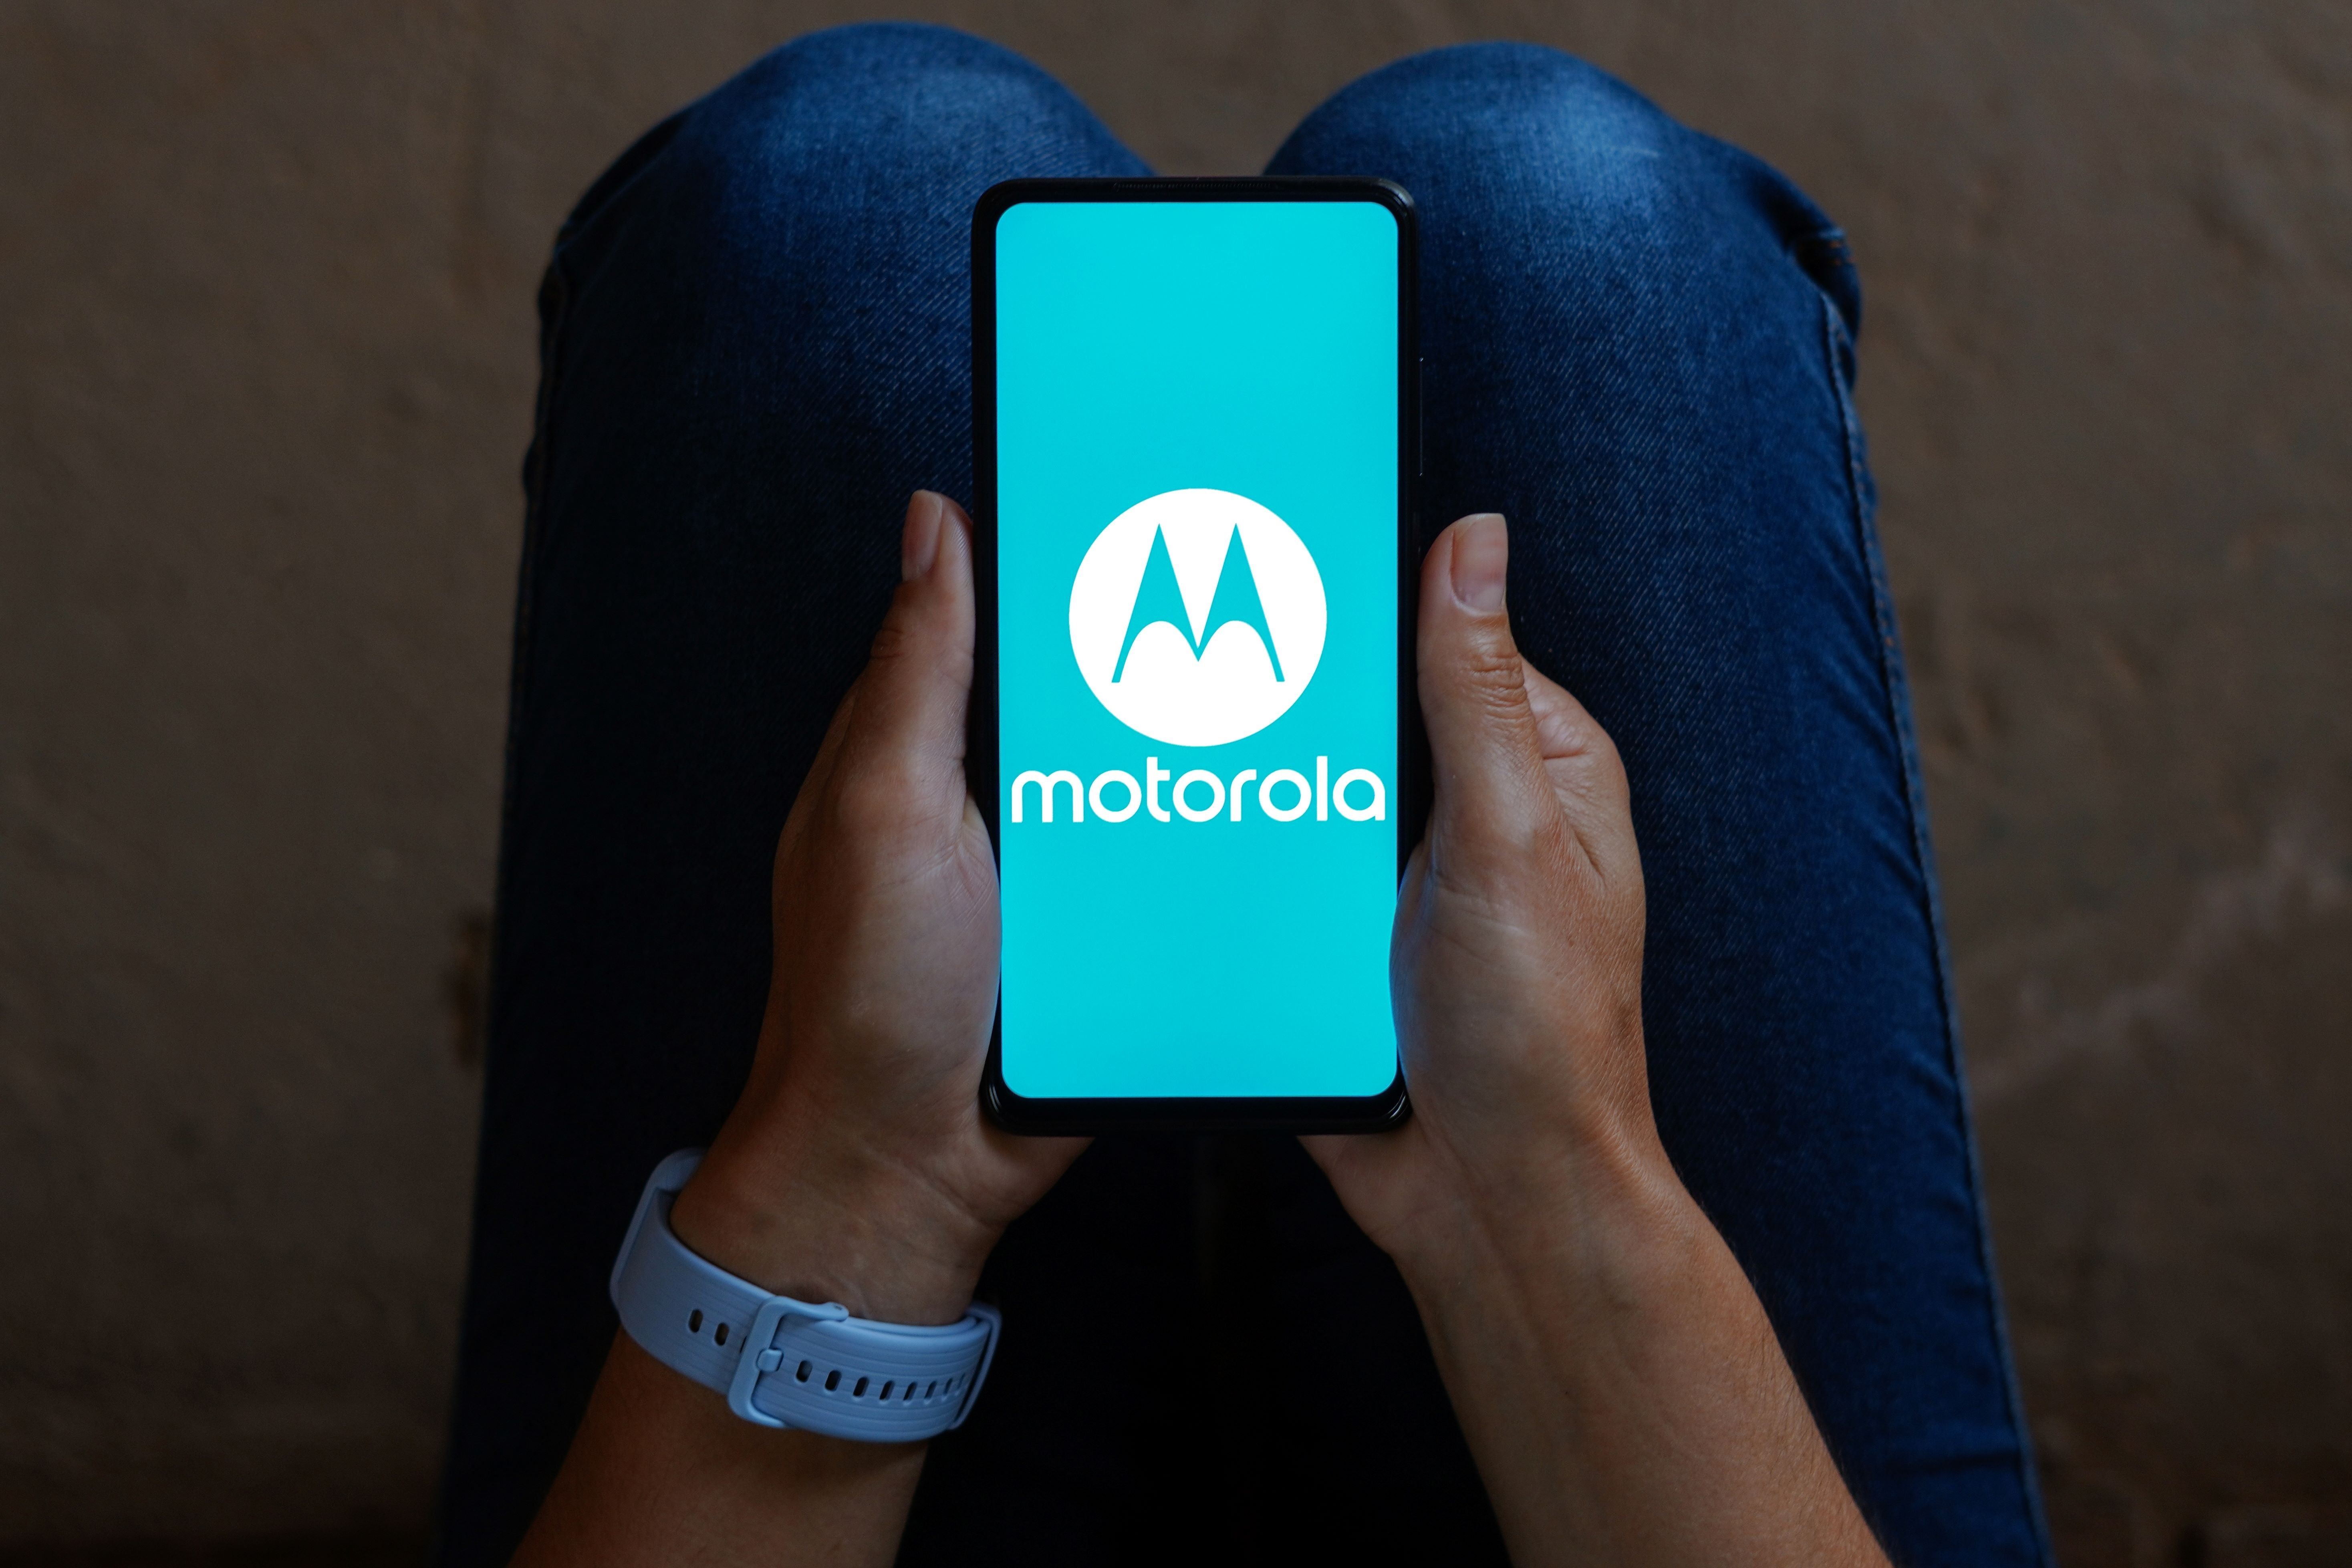 Rendkívül jó ár-érték arányú telefonnal jelentkezik itthon a Motorola